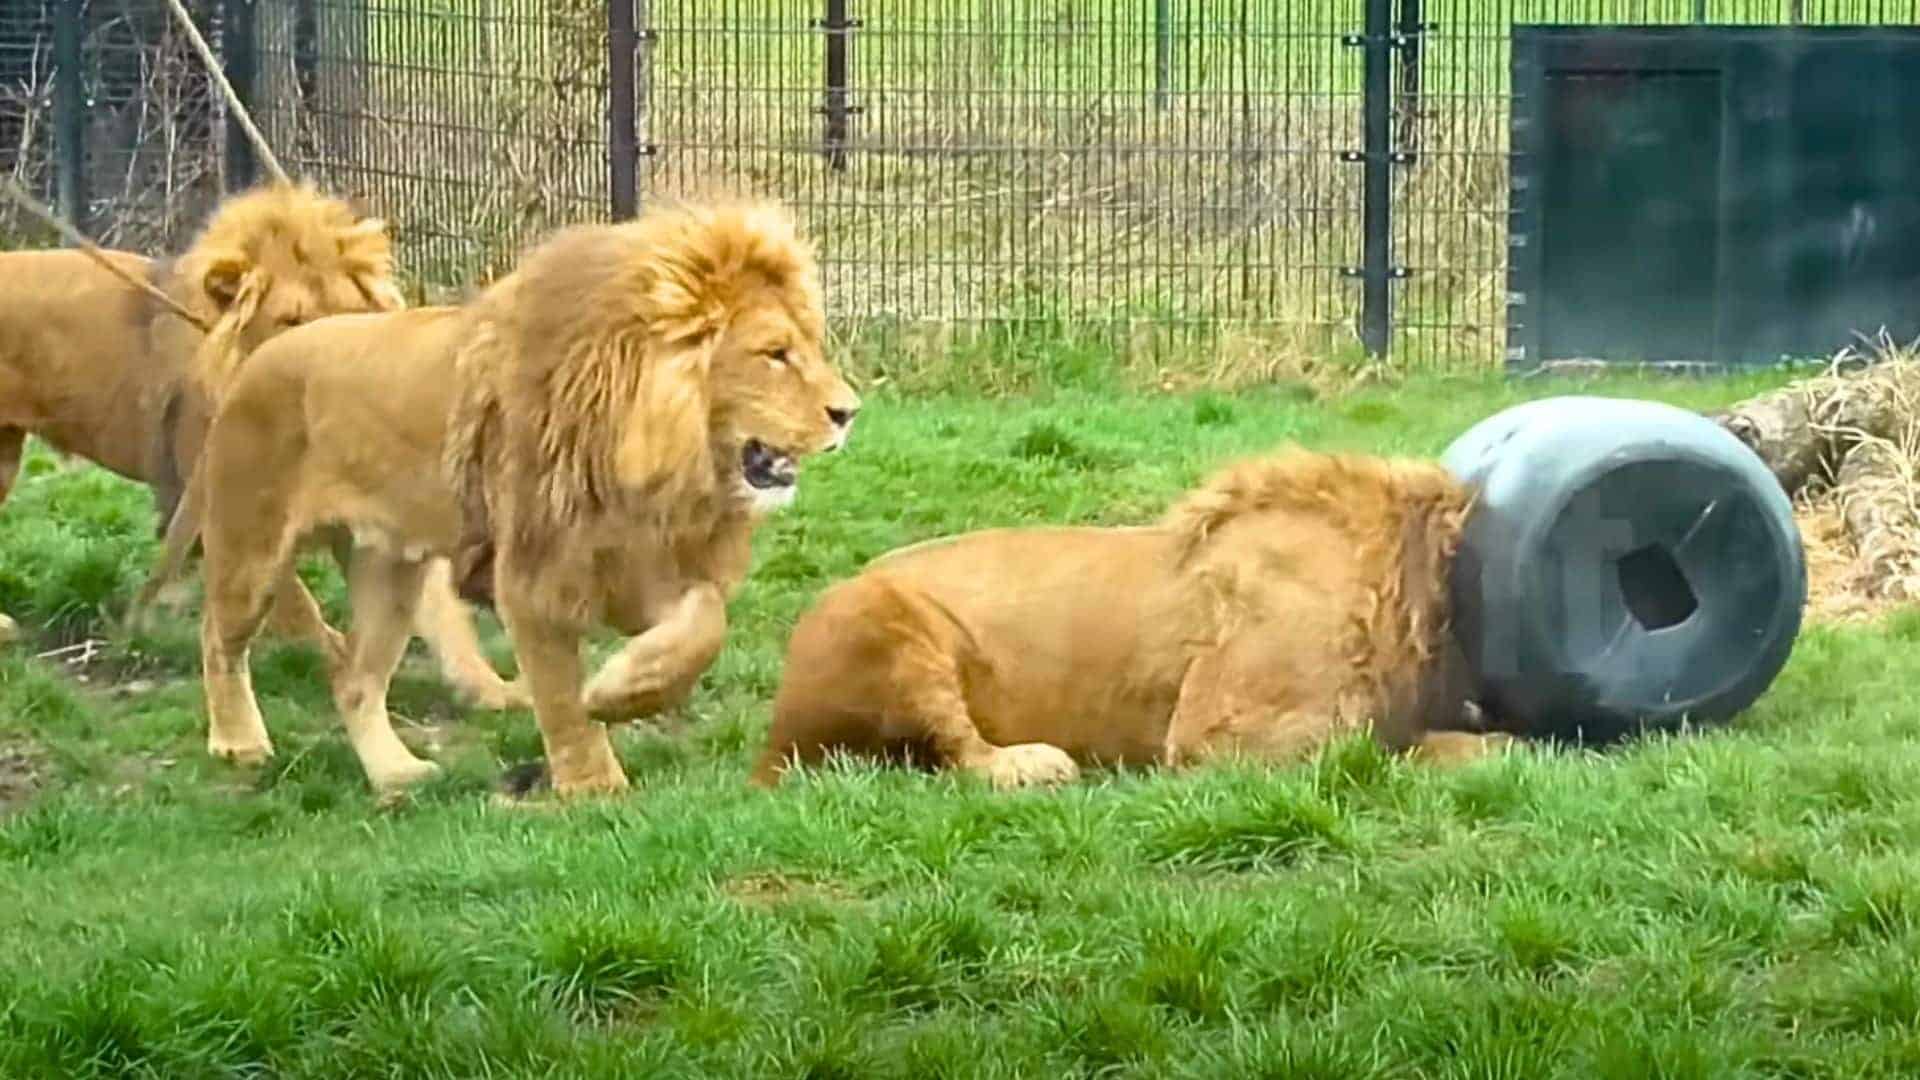 lion gets stuck in feeding barrel